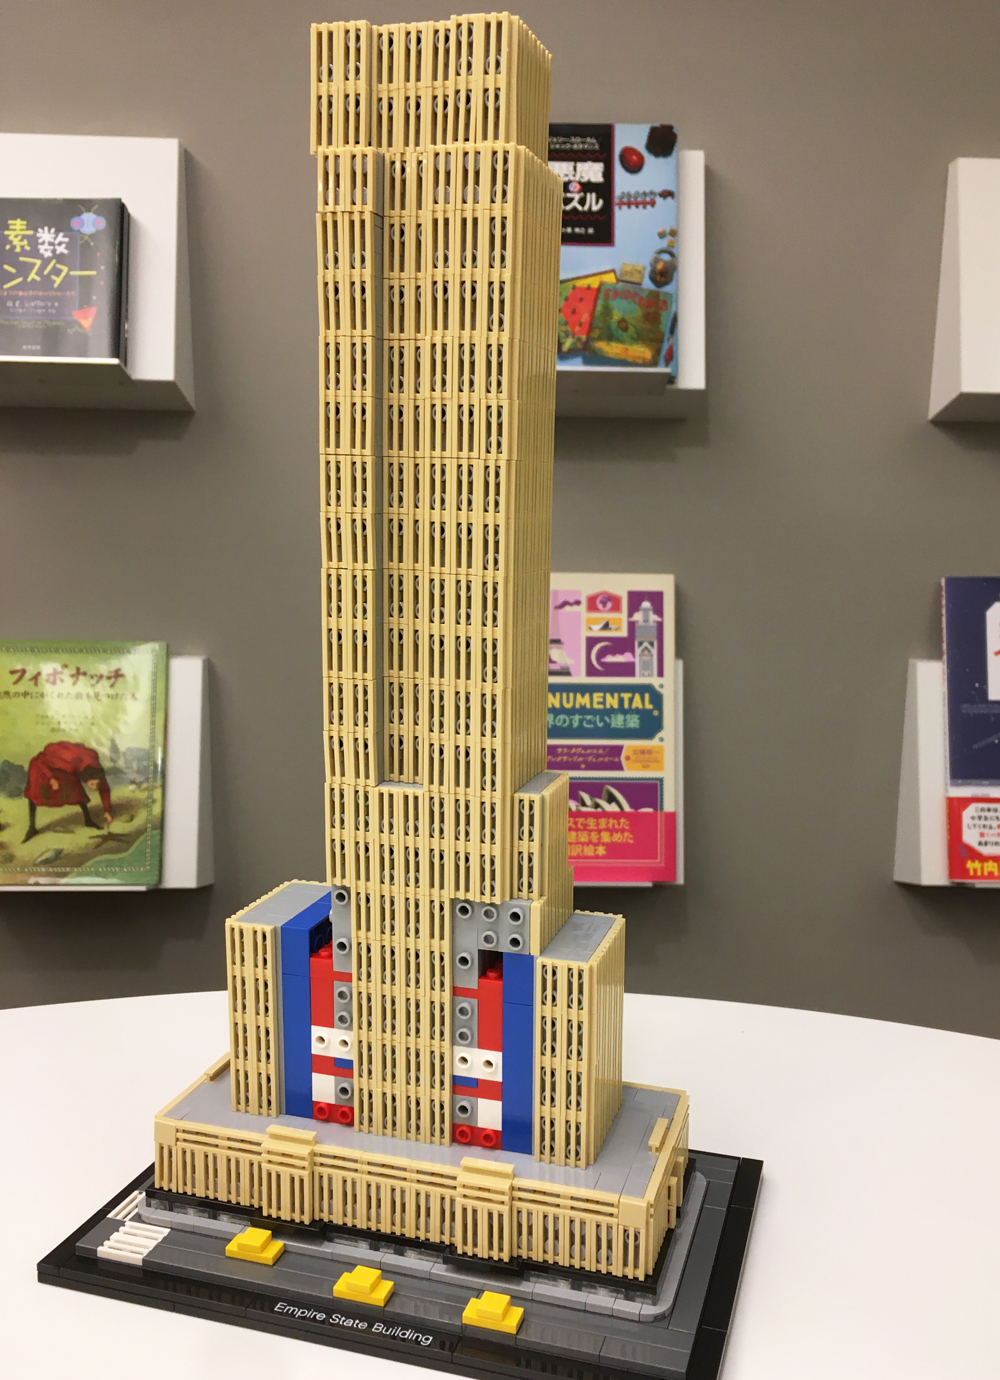 憧れの エンパイアステートビルの模型組み立てブロック玩具 模型 